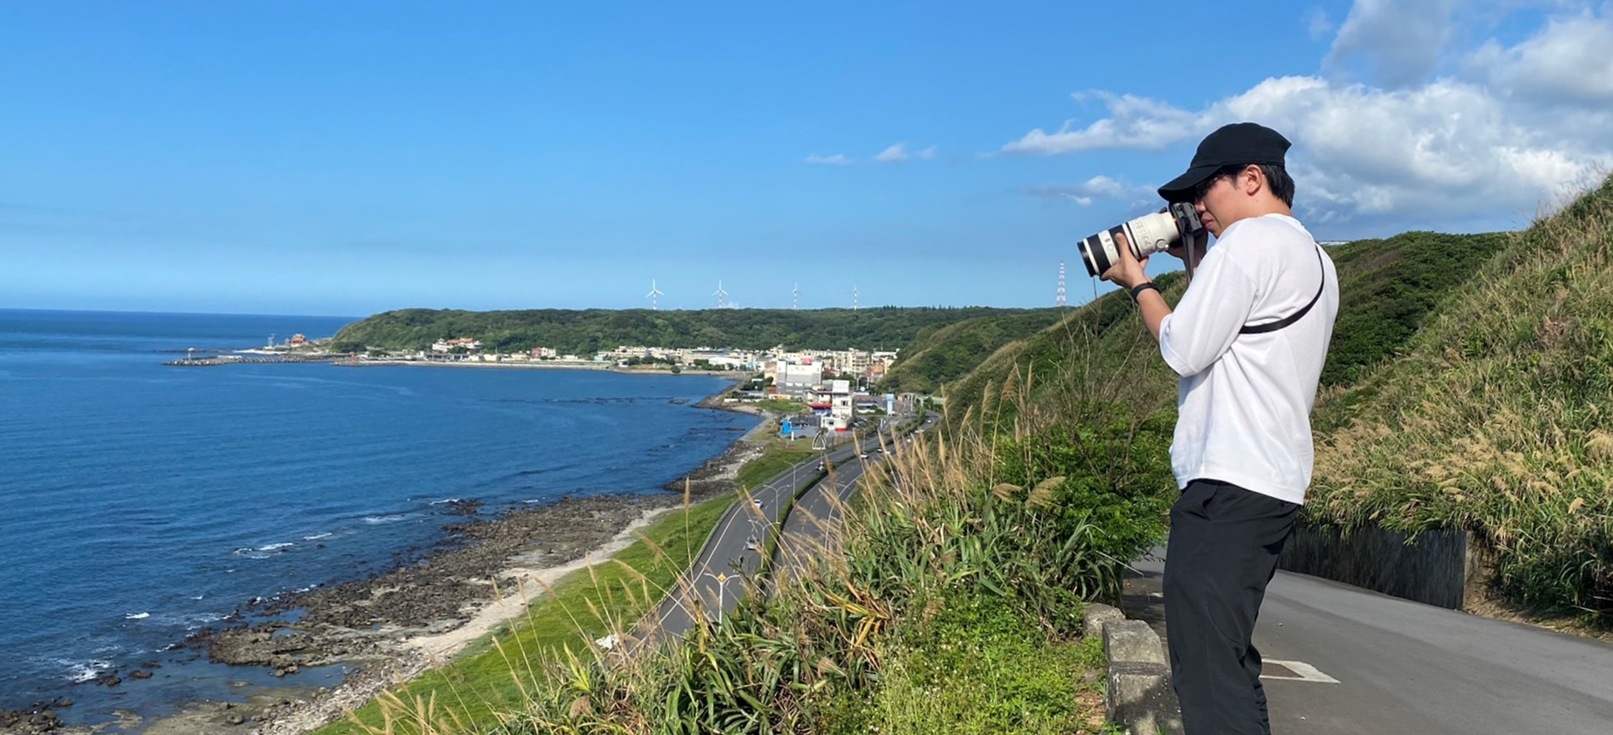 攝影觀察家劉薳粲沿著大海前行攝影